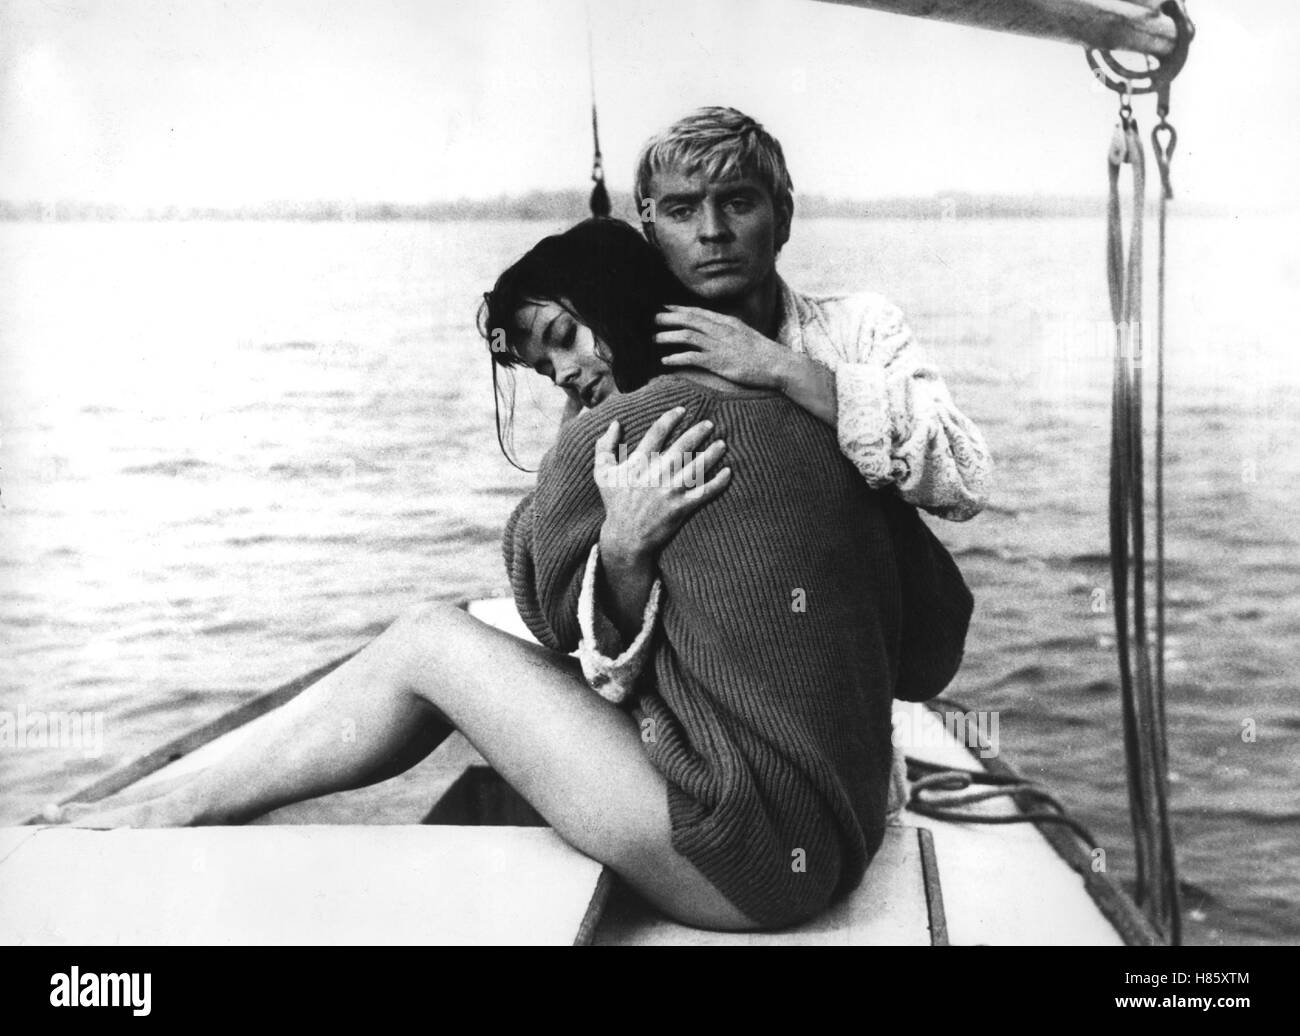 Das Messer im Wasser, (N02 W NOSZIE) POL 1962, Regie: Roman Polanski, JOLANTA UMECKA, ZYGMUNT MALANIWICZ Foto Stock